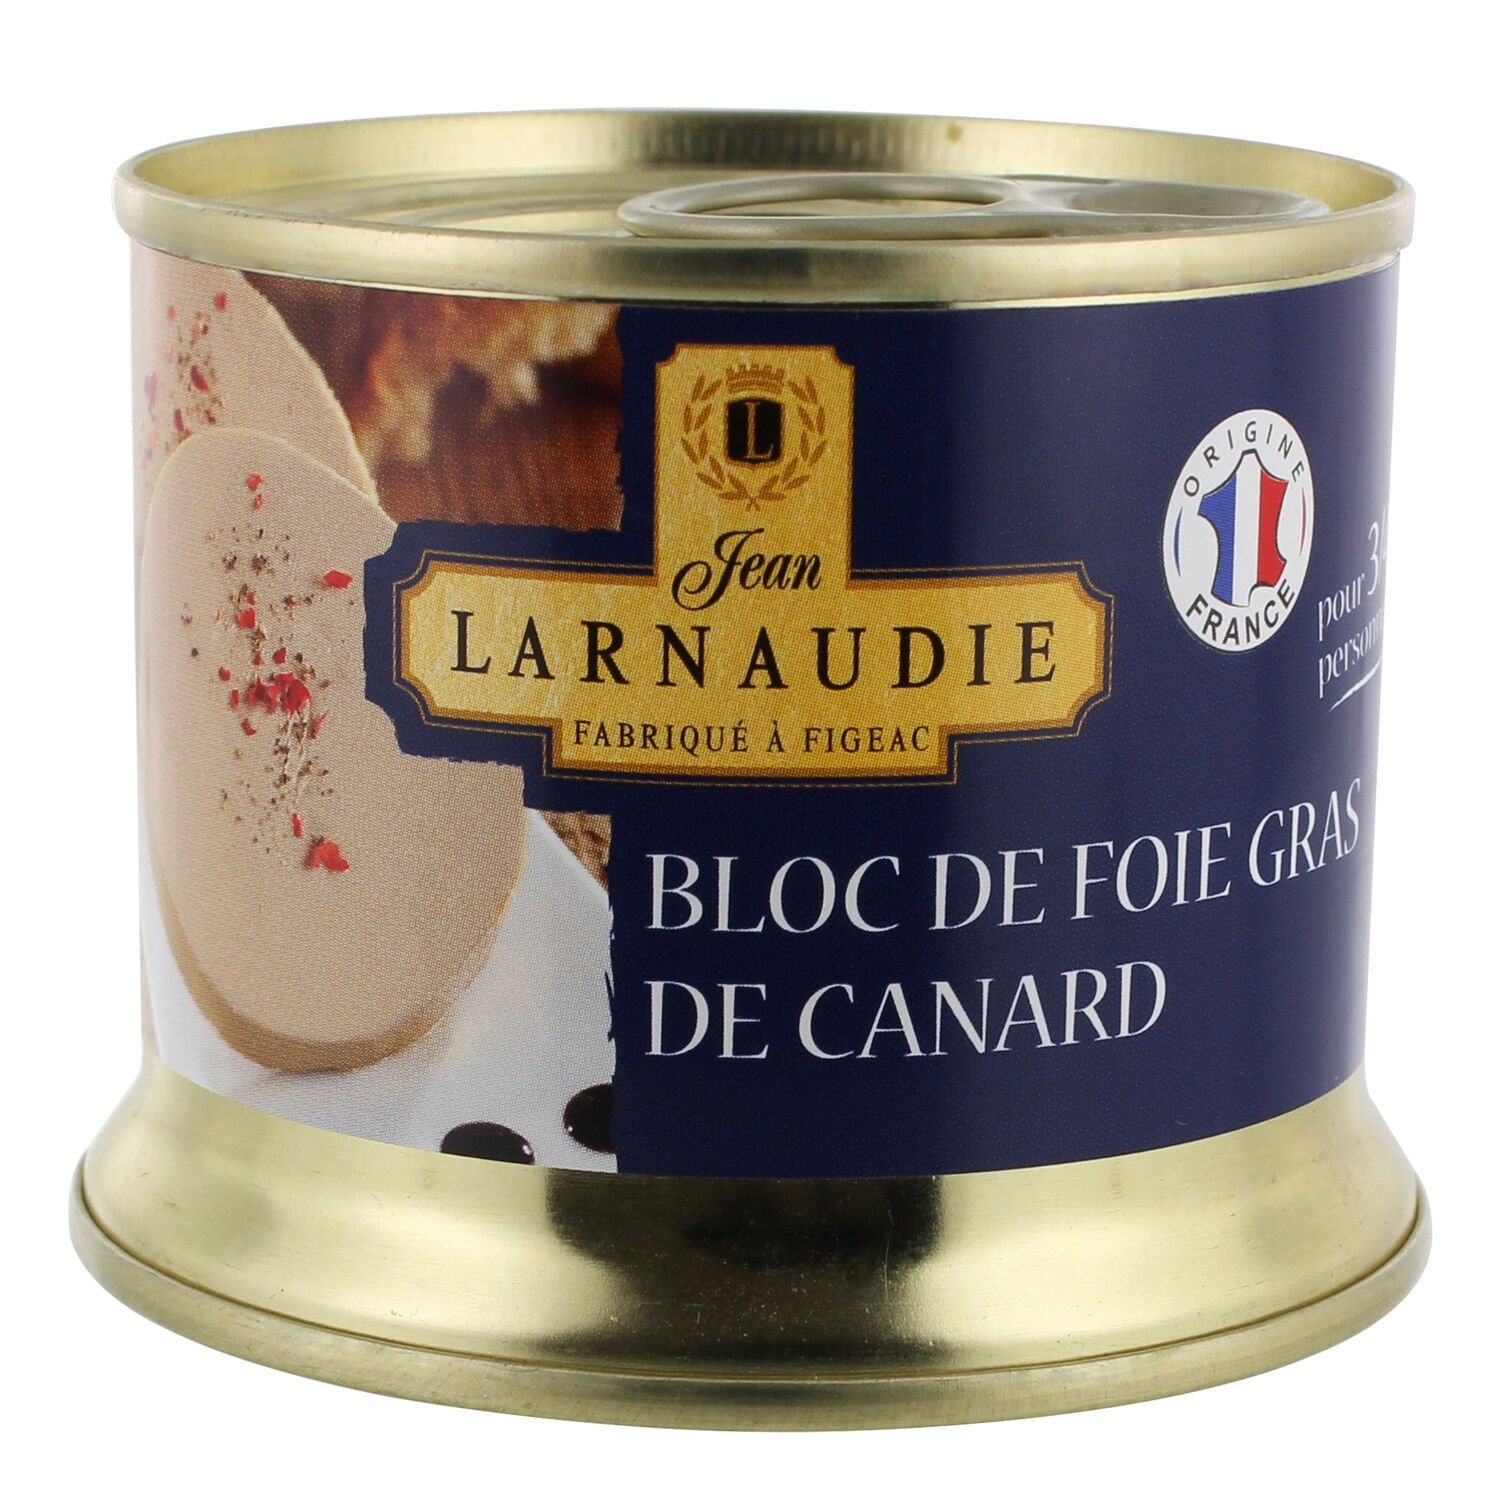 Bloc de foie gras de canard du sud ouest avec morceaux LABEYRIE : le bloc  de 535g à Prix Carrefour